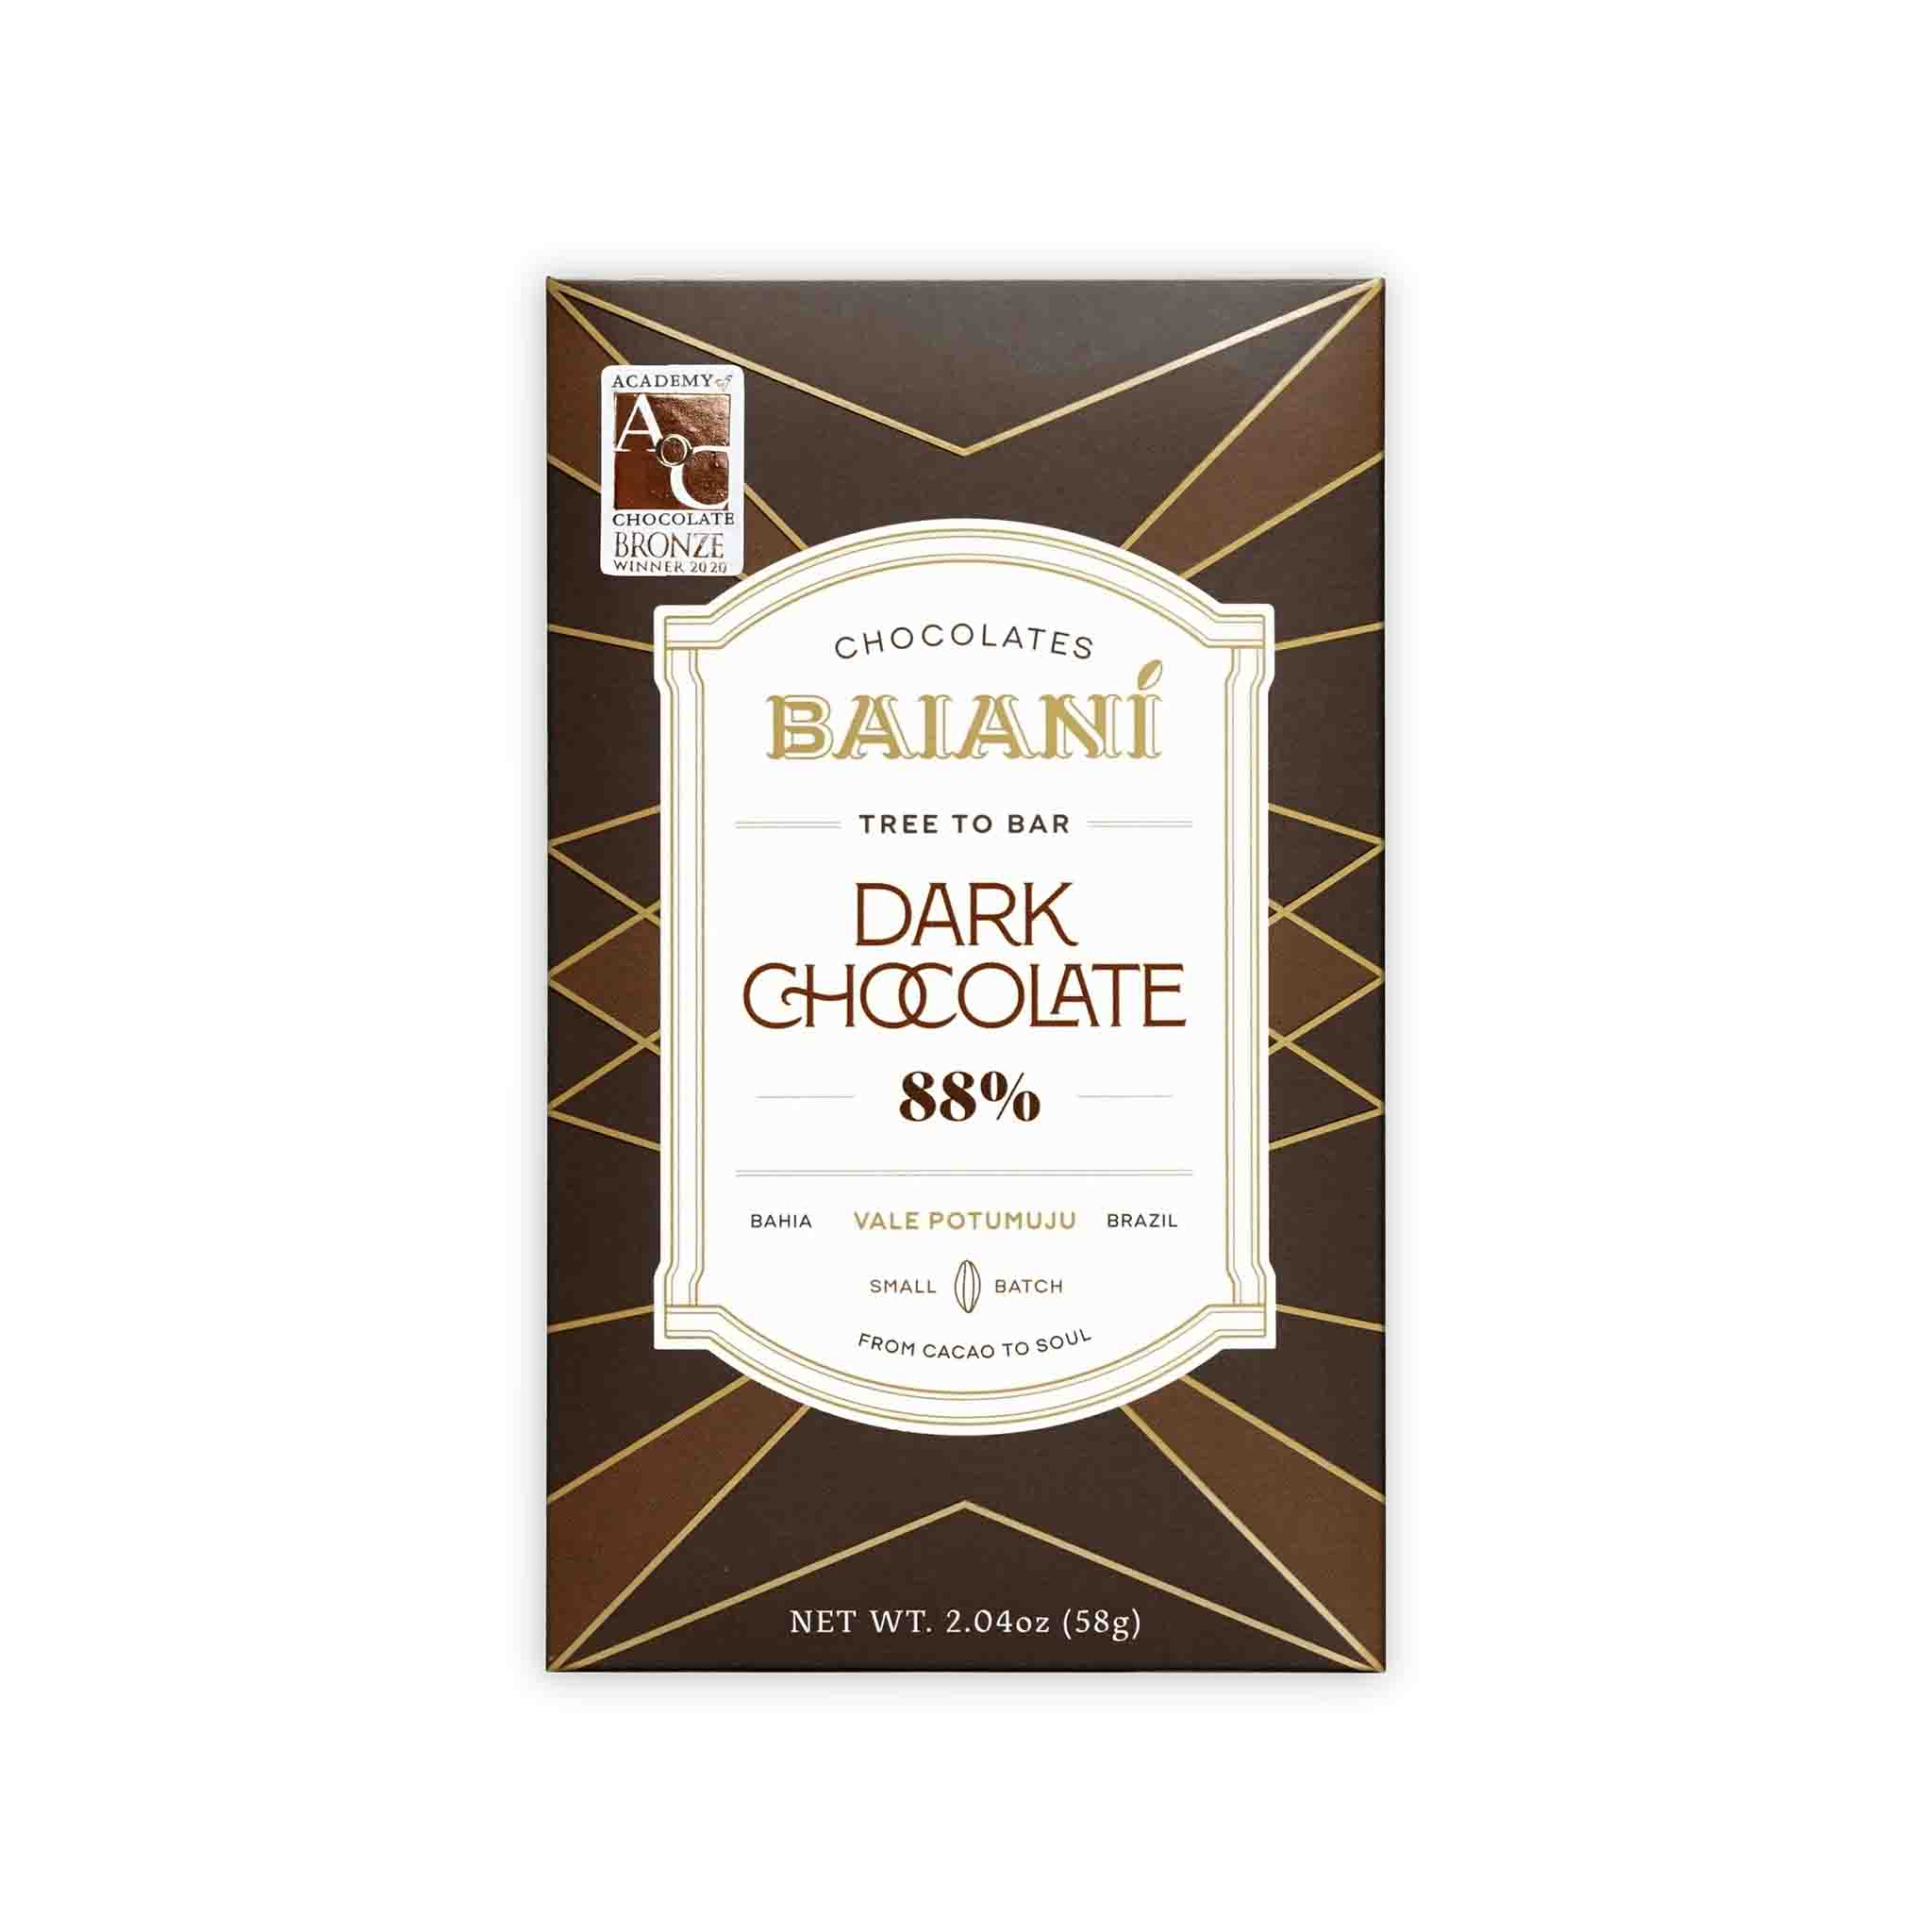 BAIANI 88% DARK CHOCOLATE 58g